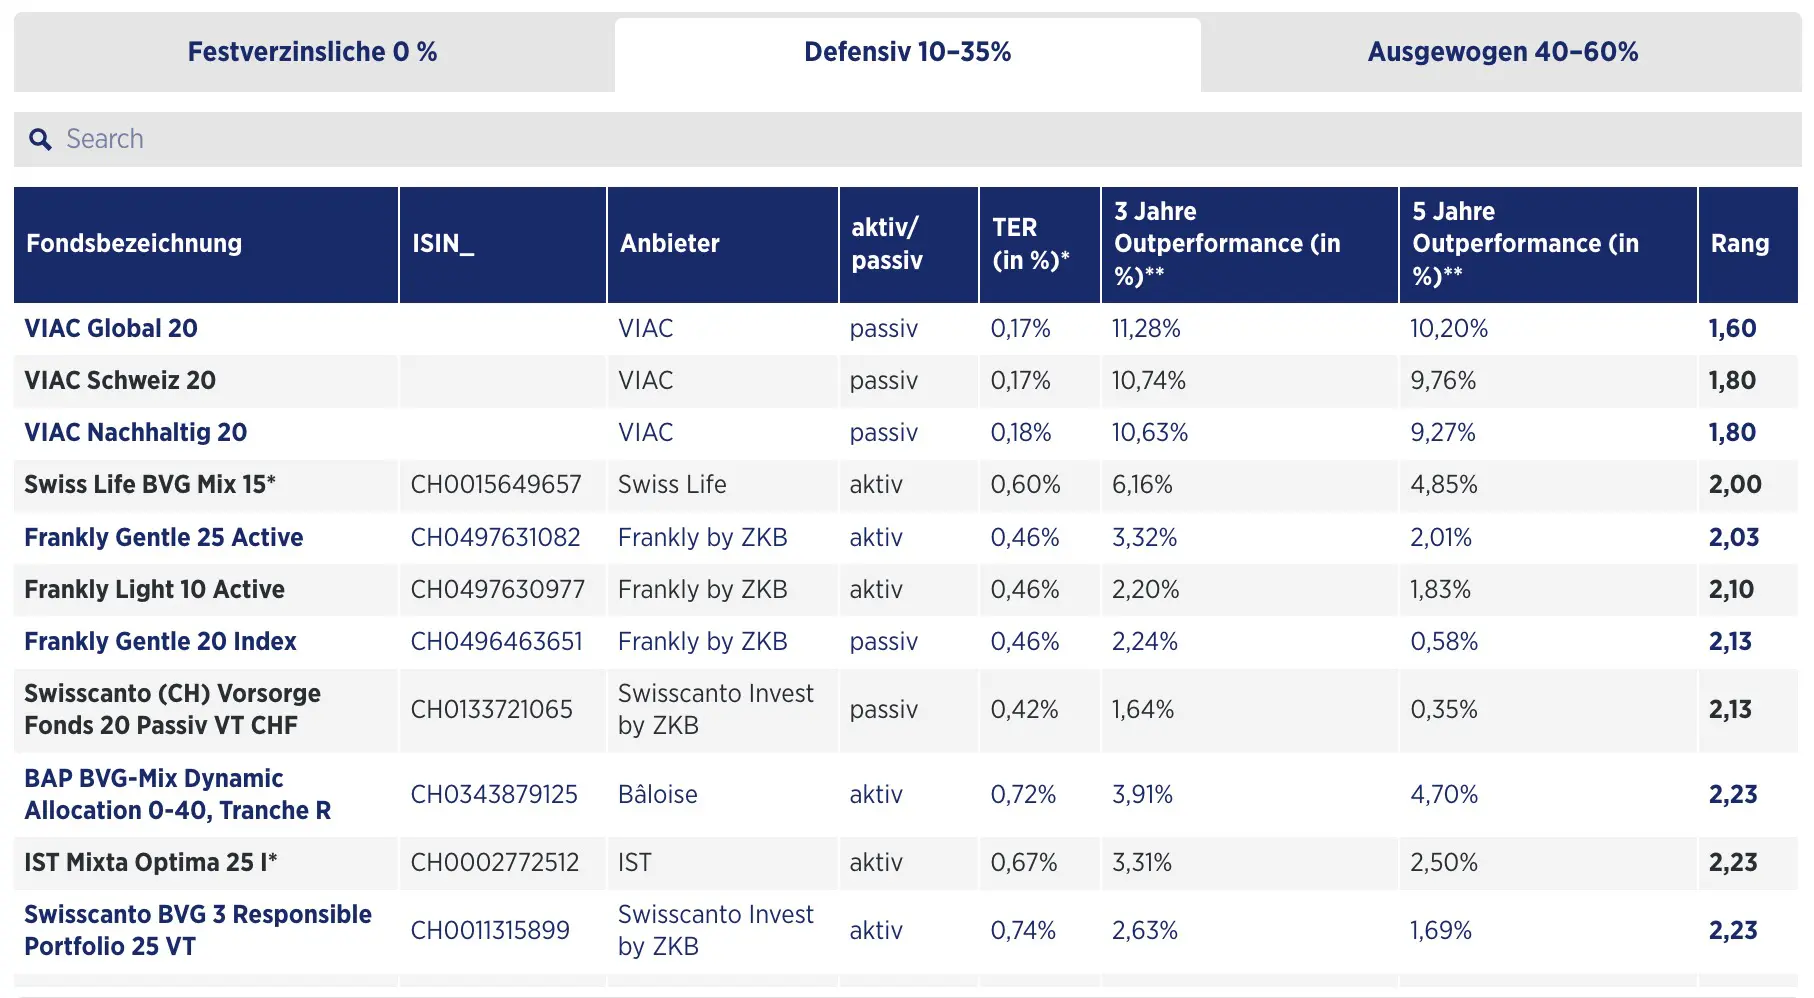 Comparatif 2023 Handelszeitung des meilleurs fonds 3a au profil défensif avec 10-35% en actions (Quelle: Handelszeitung)